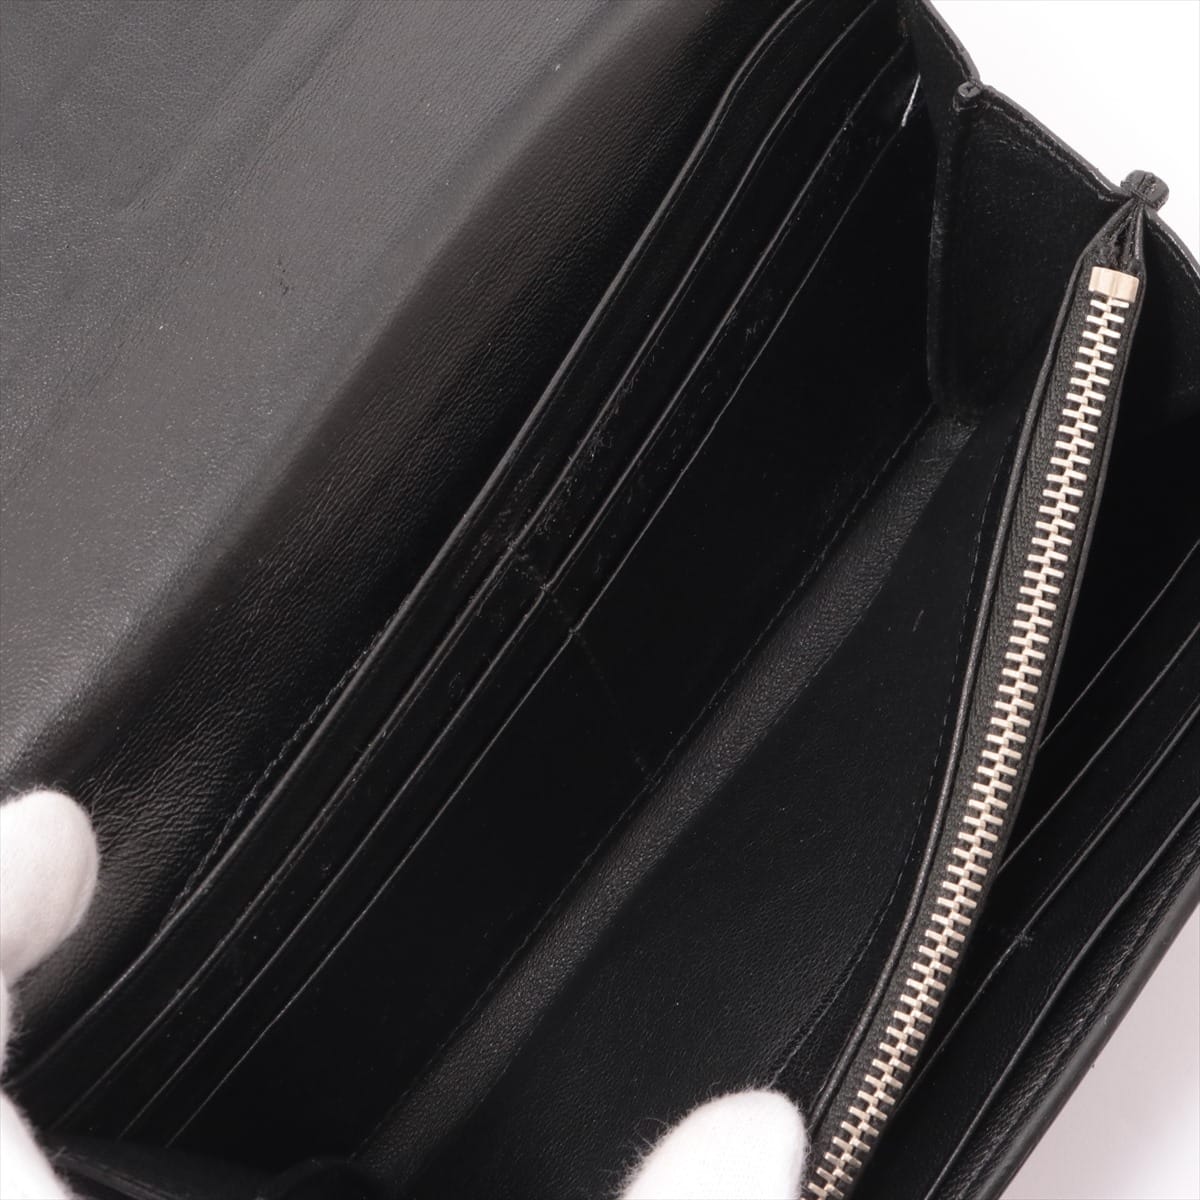 Saint Laurent Paris Leather Wallet Black